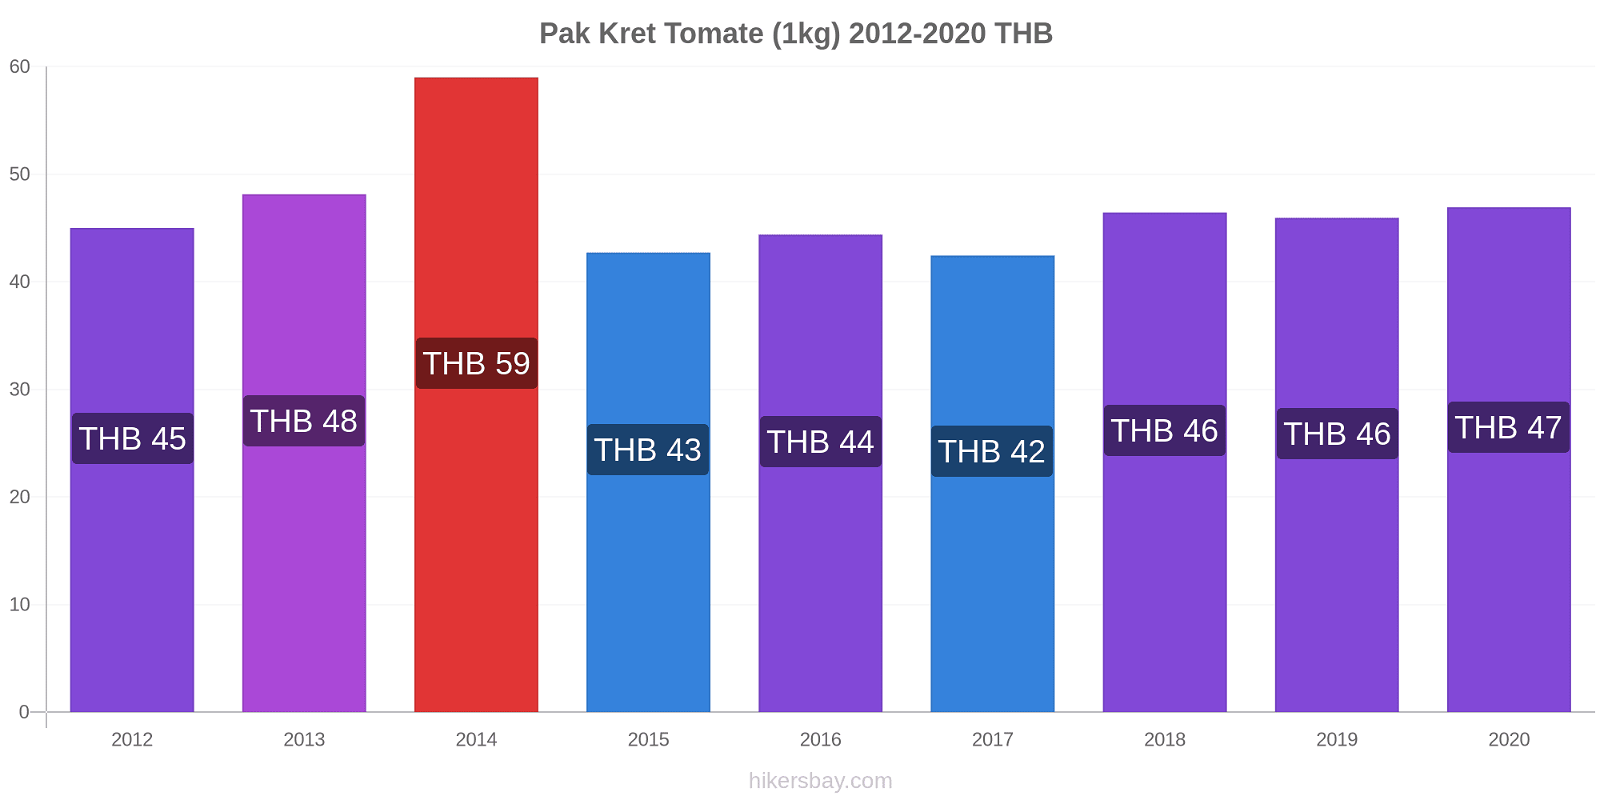 Pak Kret cambios de precios Tomate (1kg) hikersbay.com